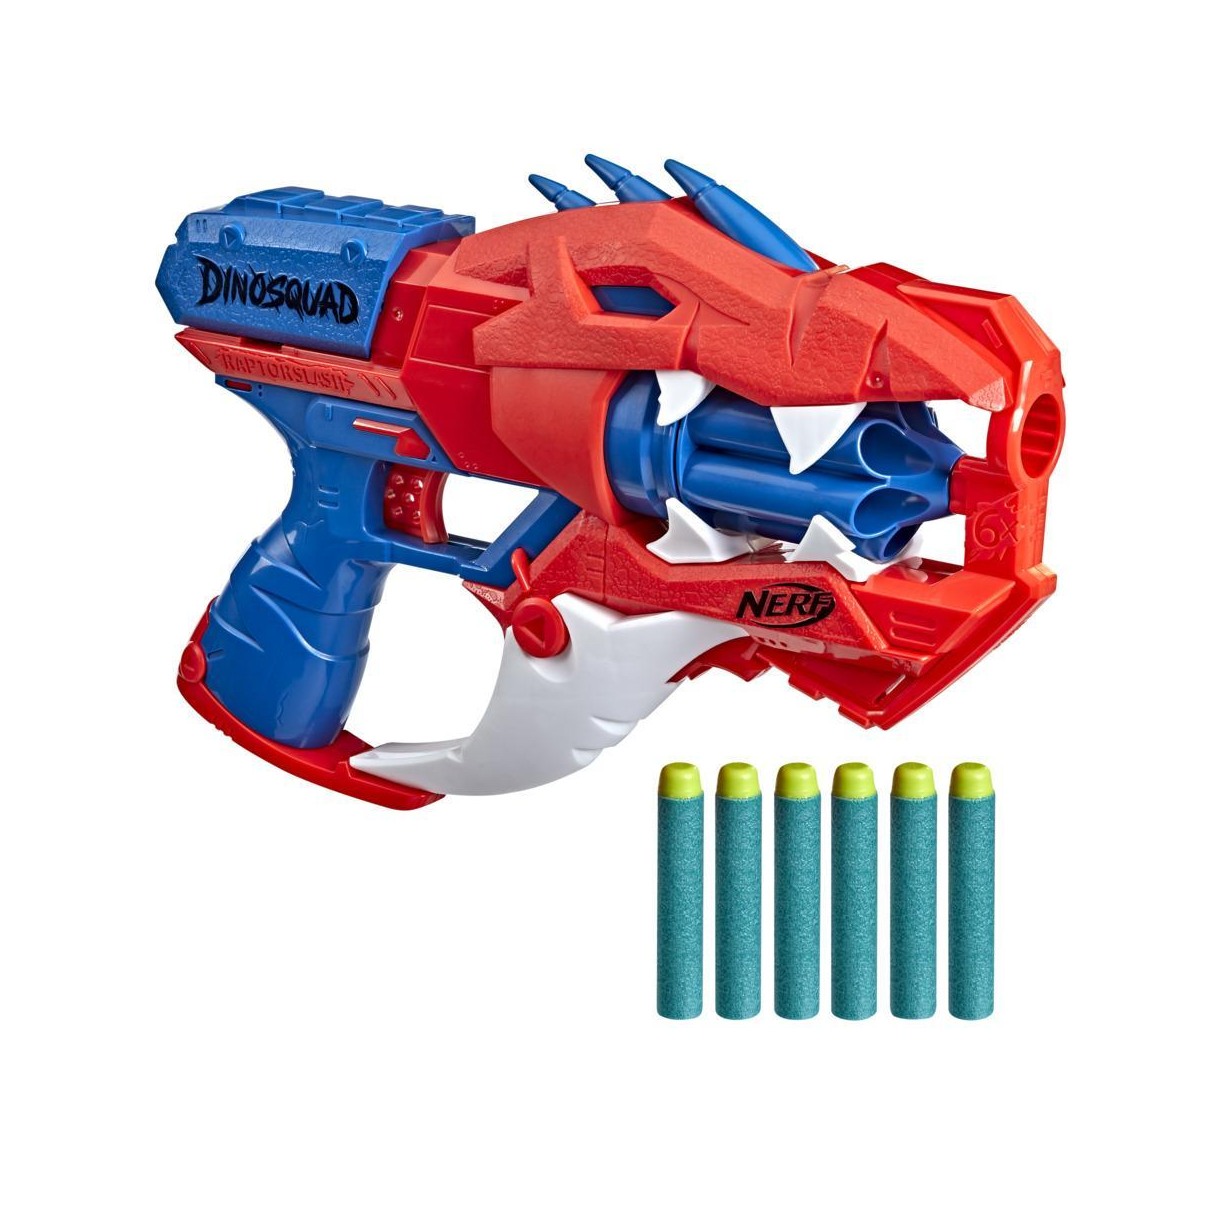 NERF arma Sniper vermelho com 20 dardos de espuma e prática de alvo